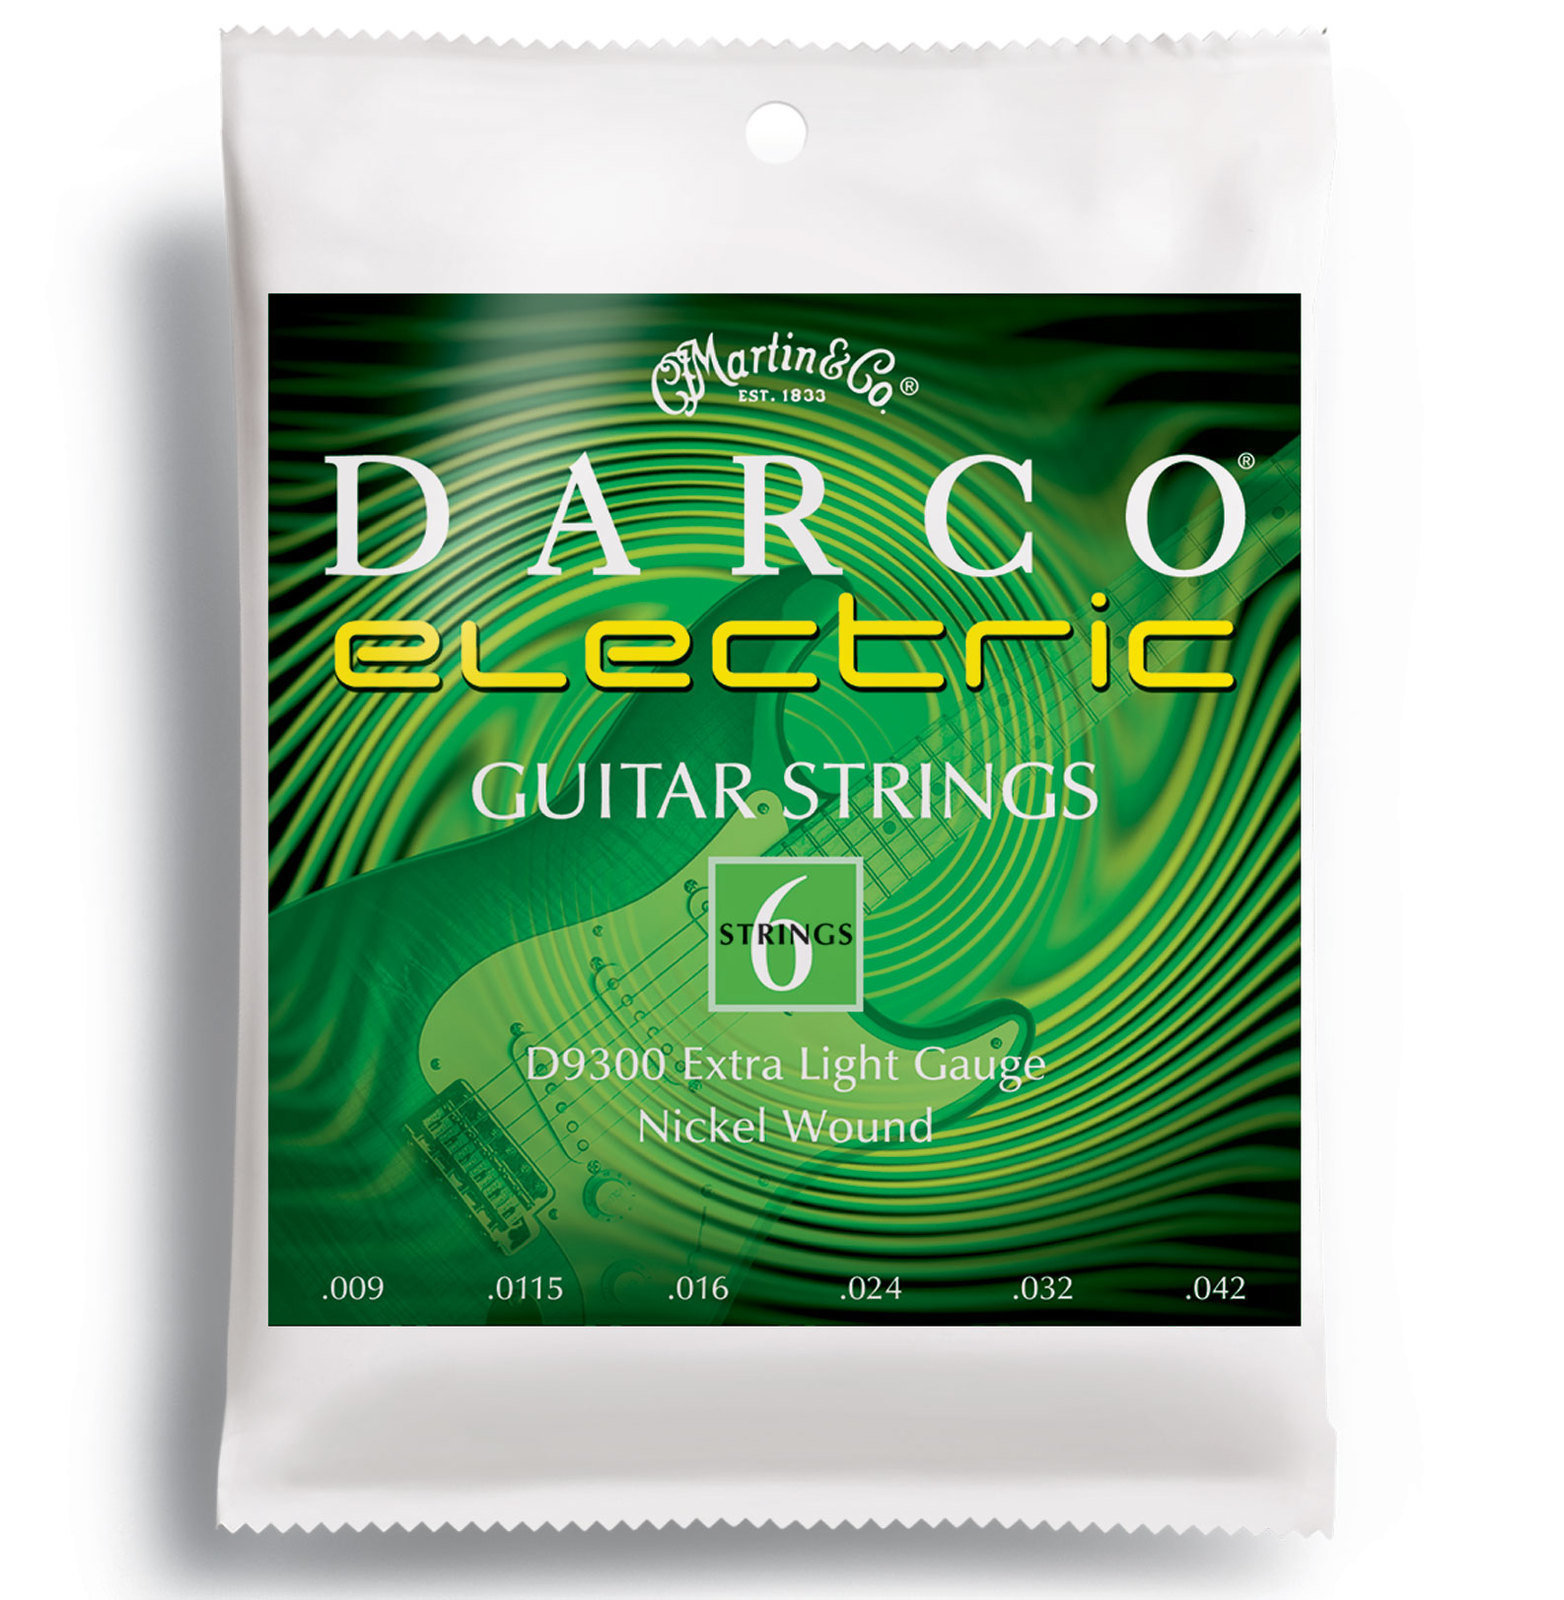 E-guitar strings Martin D9300 Darco Electric Guitar Strings, Extra Light